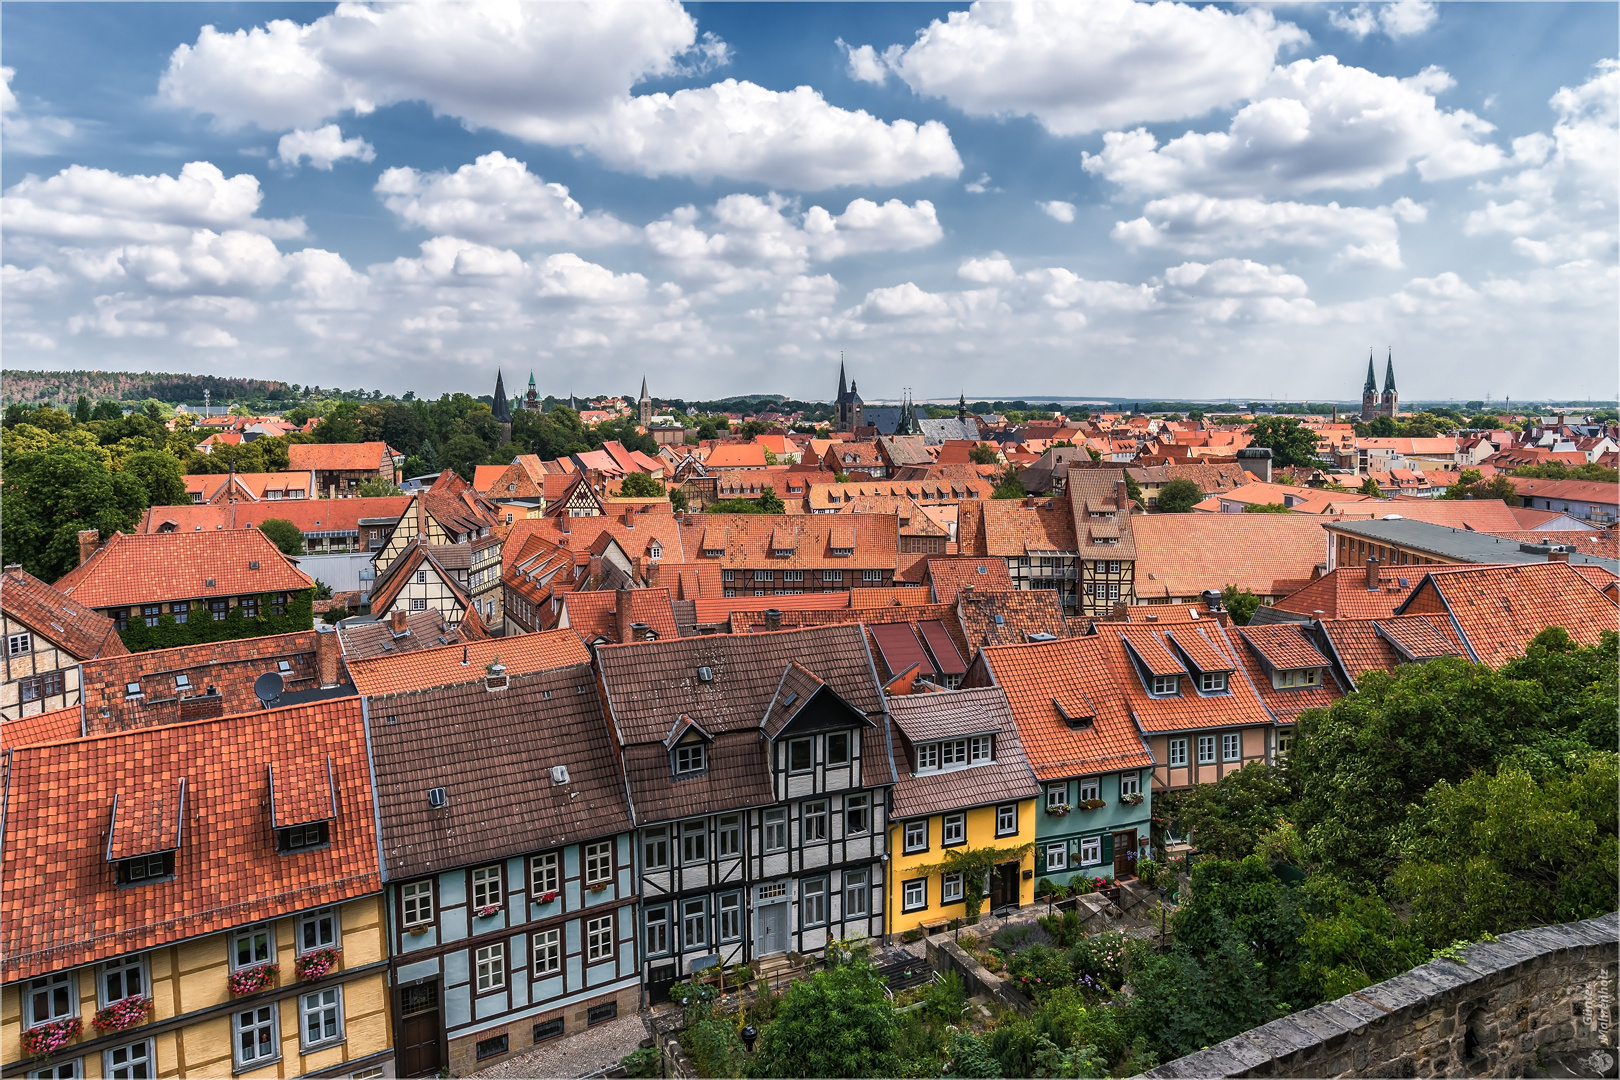 Quedlinburg, Blick auf eine alte Stadt.